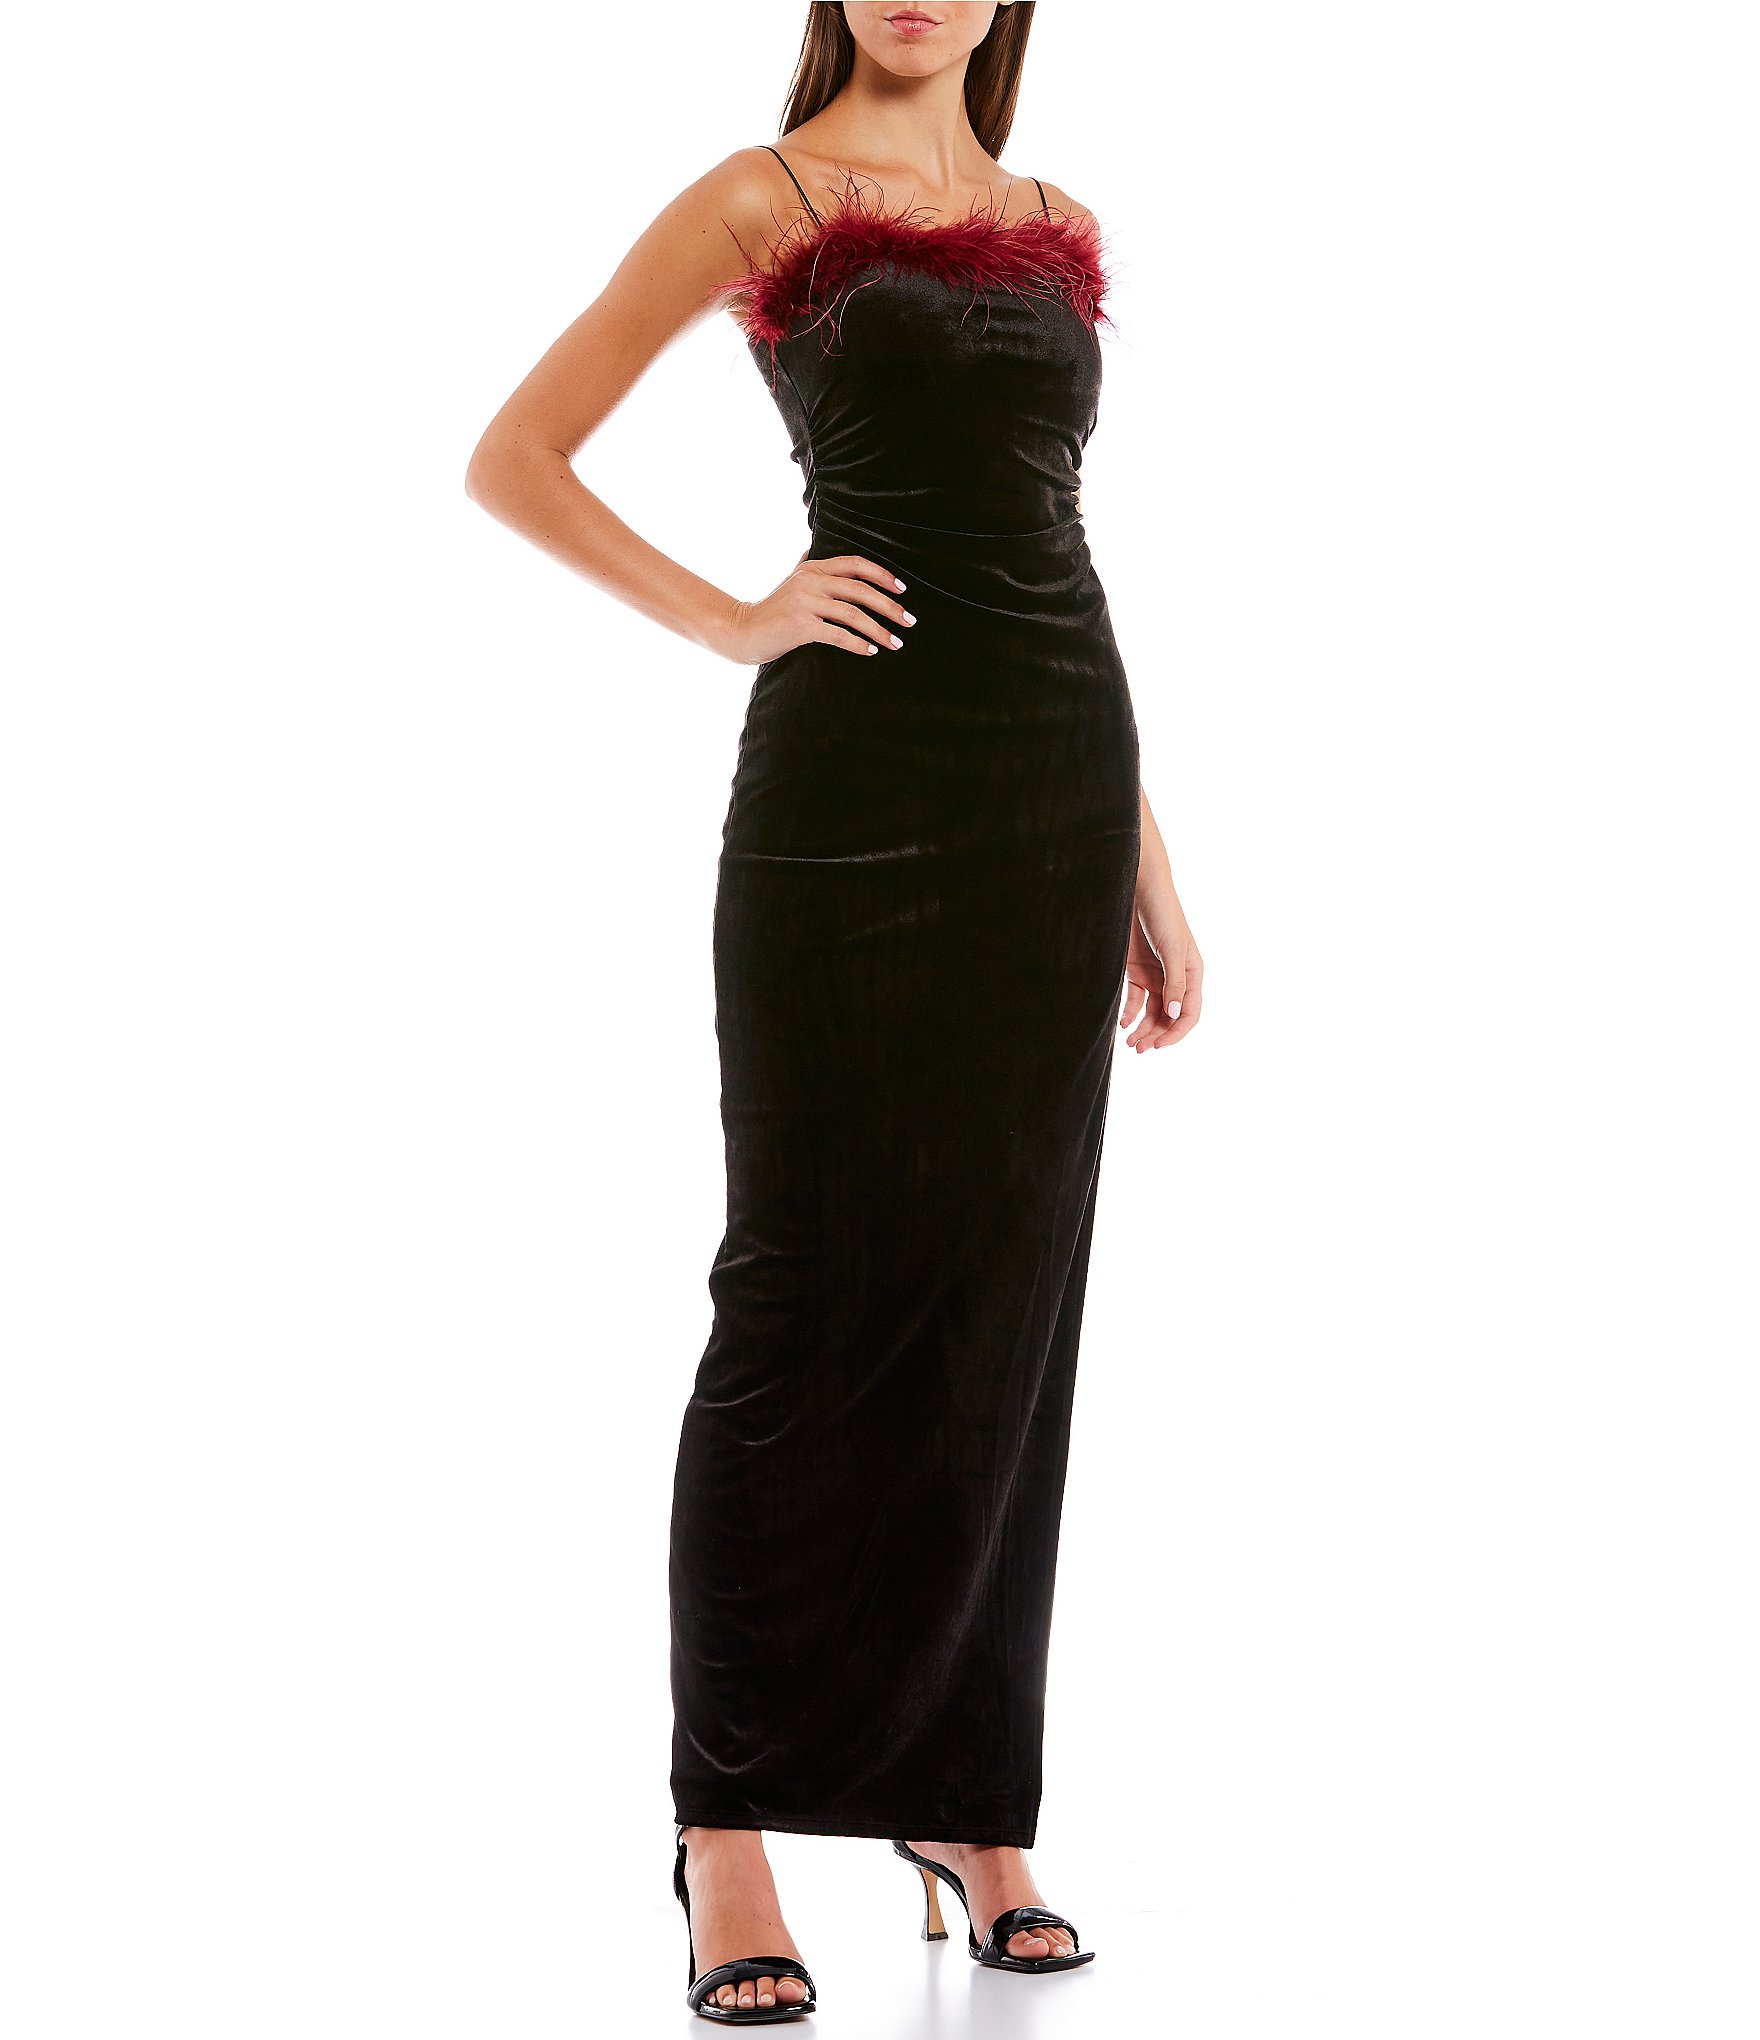 Clearance 00, XXS Women's Formal Dresses & Evening Gowns | Dillard's